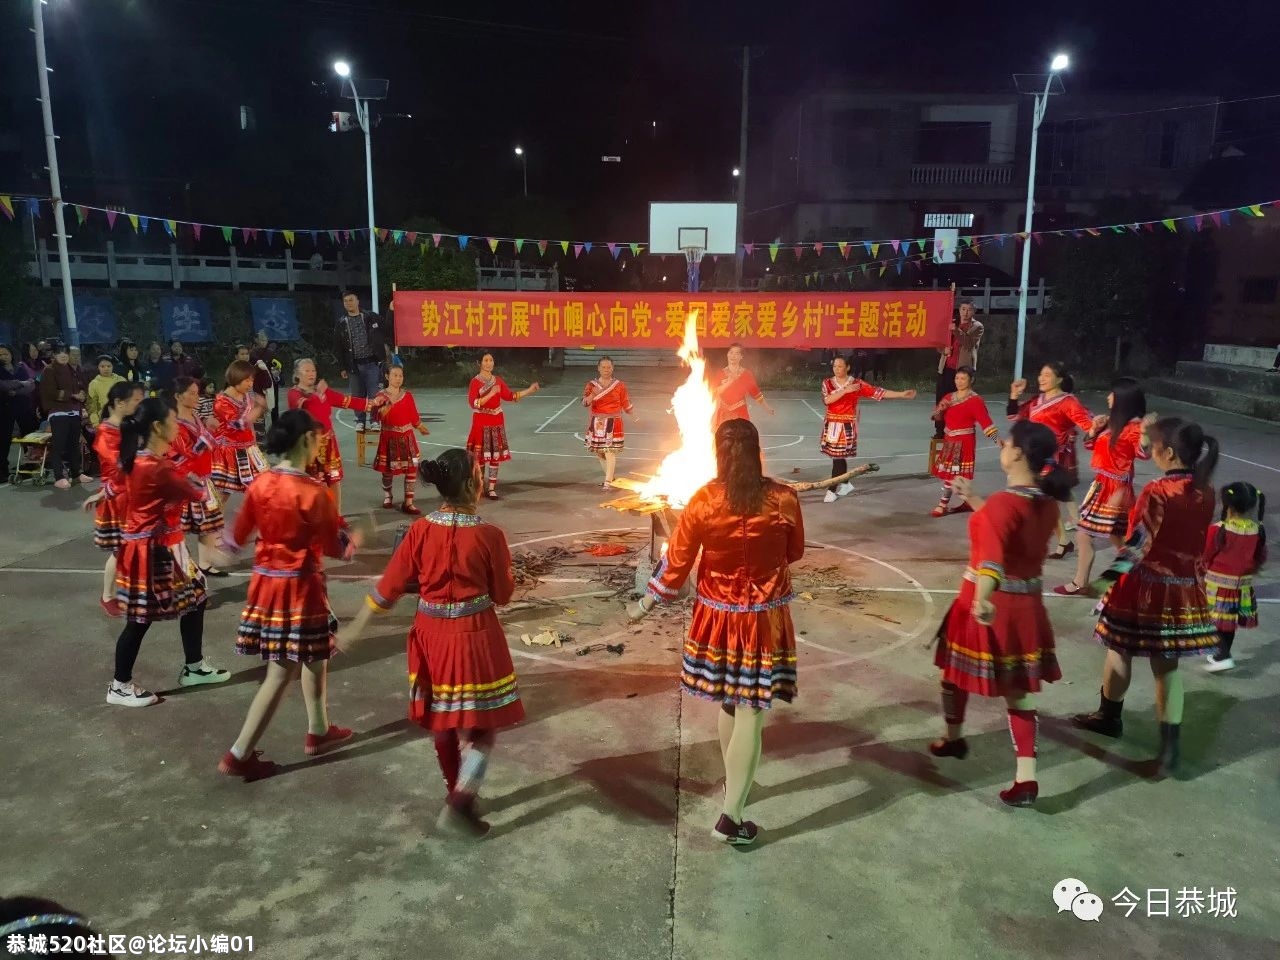 来！一起看看大恭城的妇女同胞们是如何庆祝“三八”妇女节的576 / 作者:论坛小编01 / 帖子ID:283134